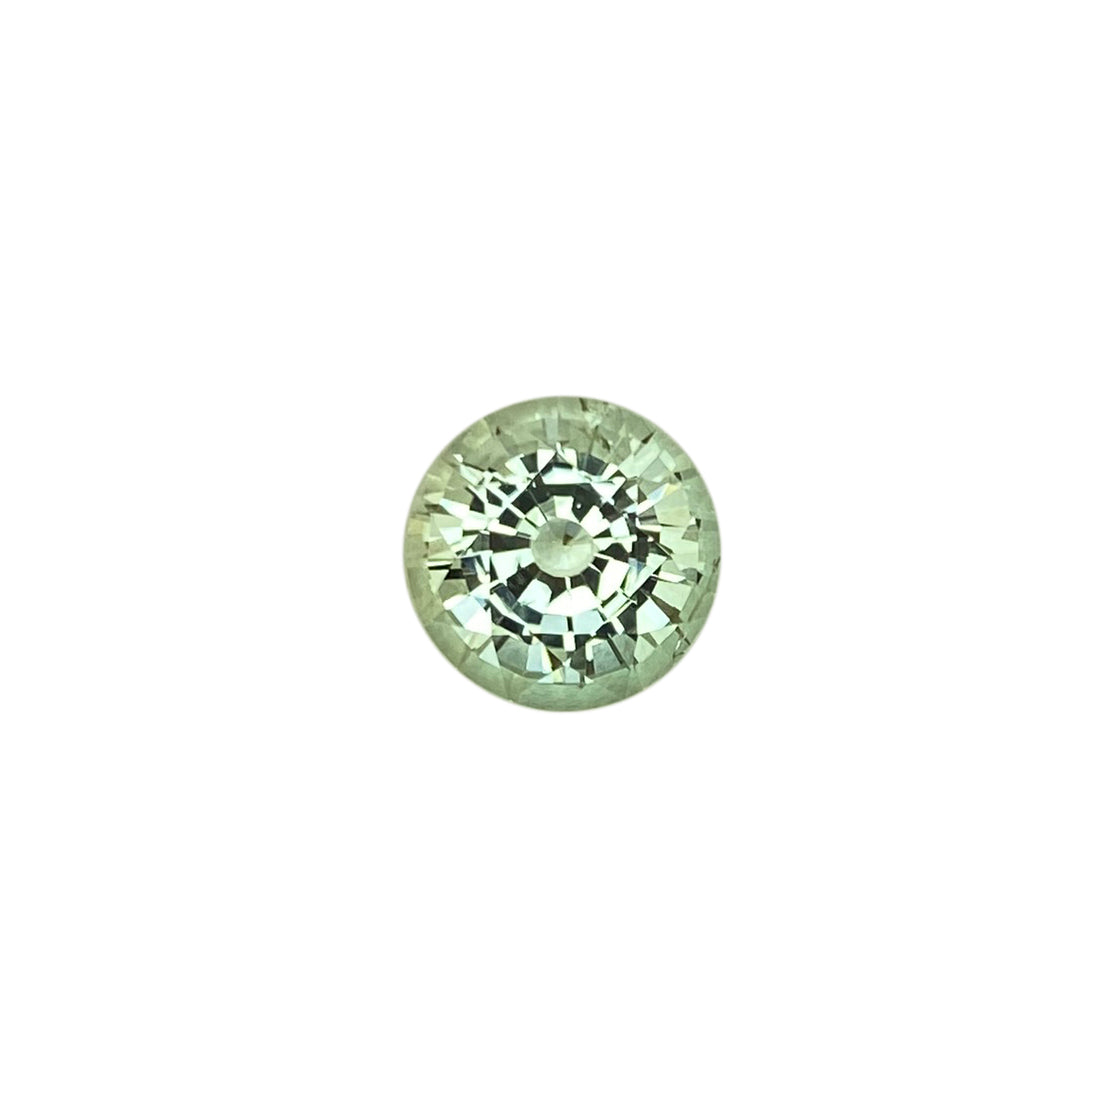 Light Mint Green Tourmaline